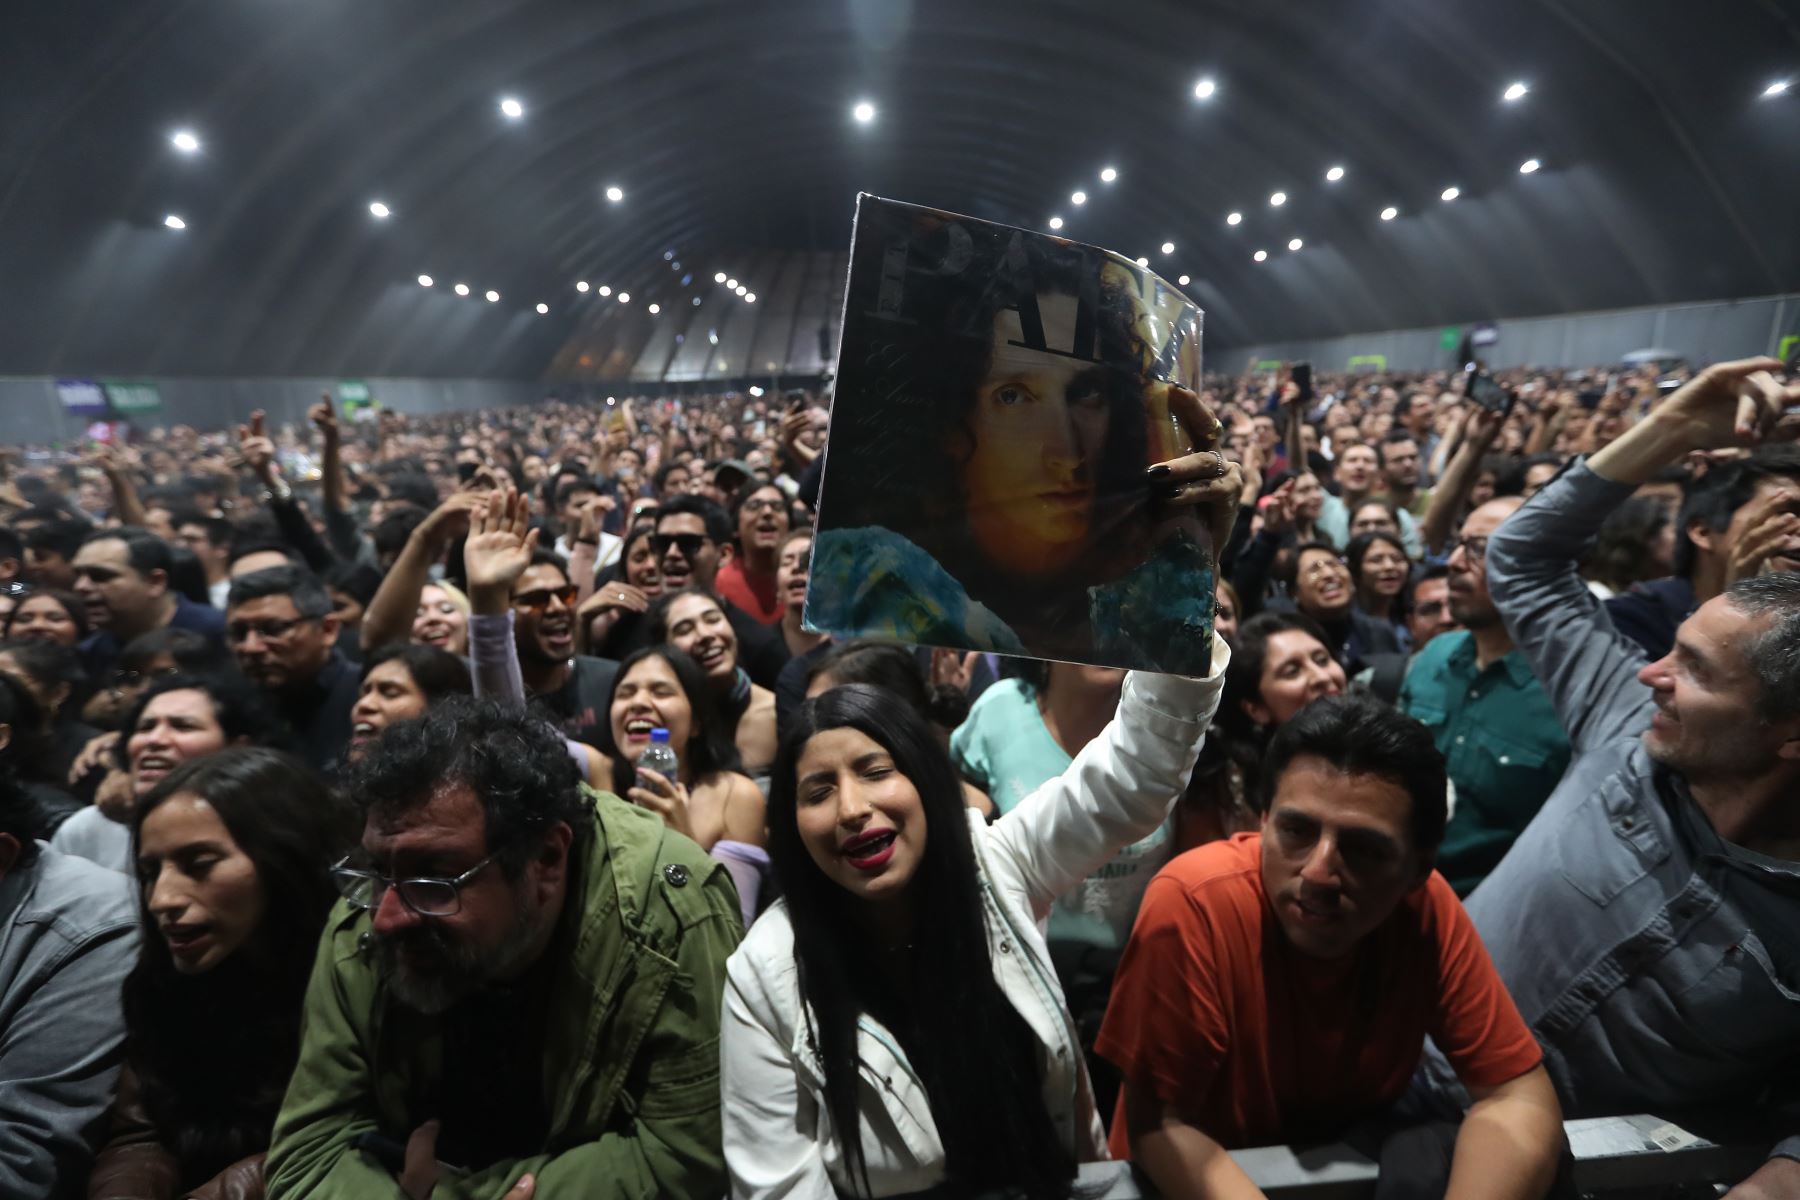 Fito Páez deslumbra en gran concierto  en Limeño. El cantante argentino presenta  esperado show en Lima  como parte de su gira “El amor 30 años después del amor”.
Foto: ANDINA/Ricardo Cuba